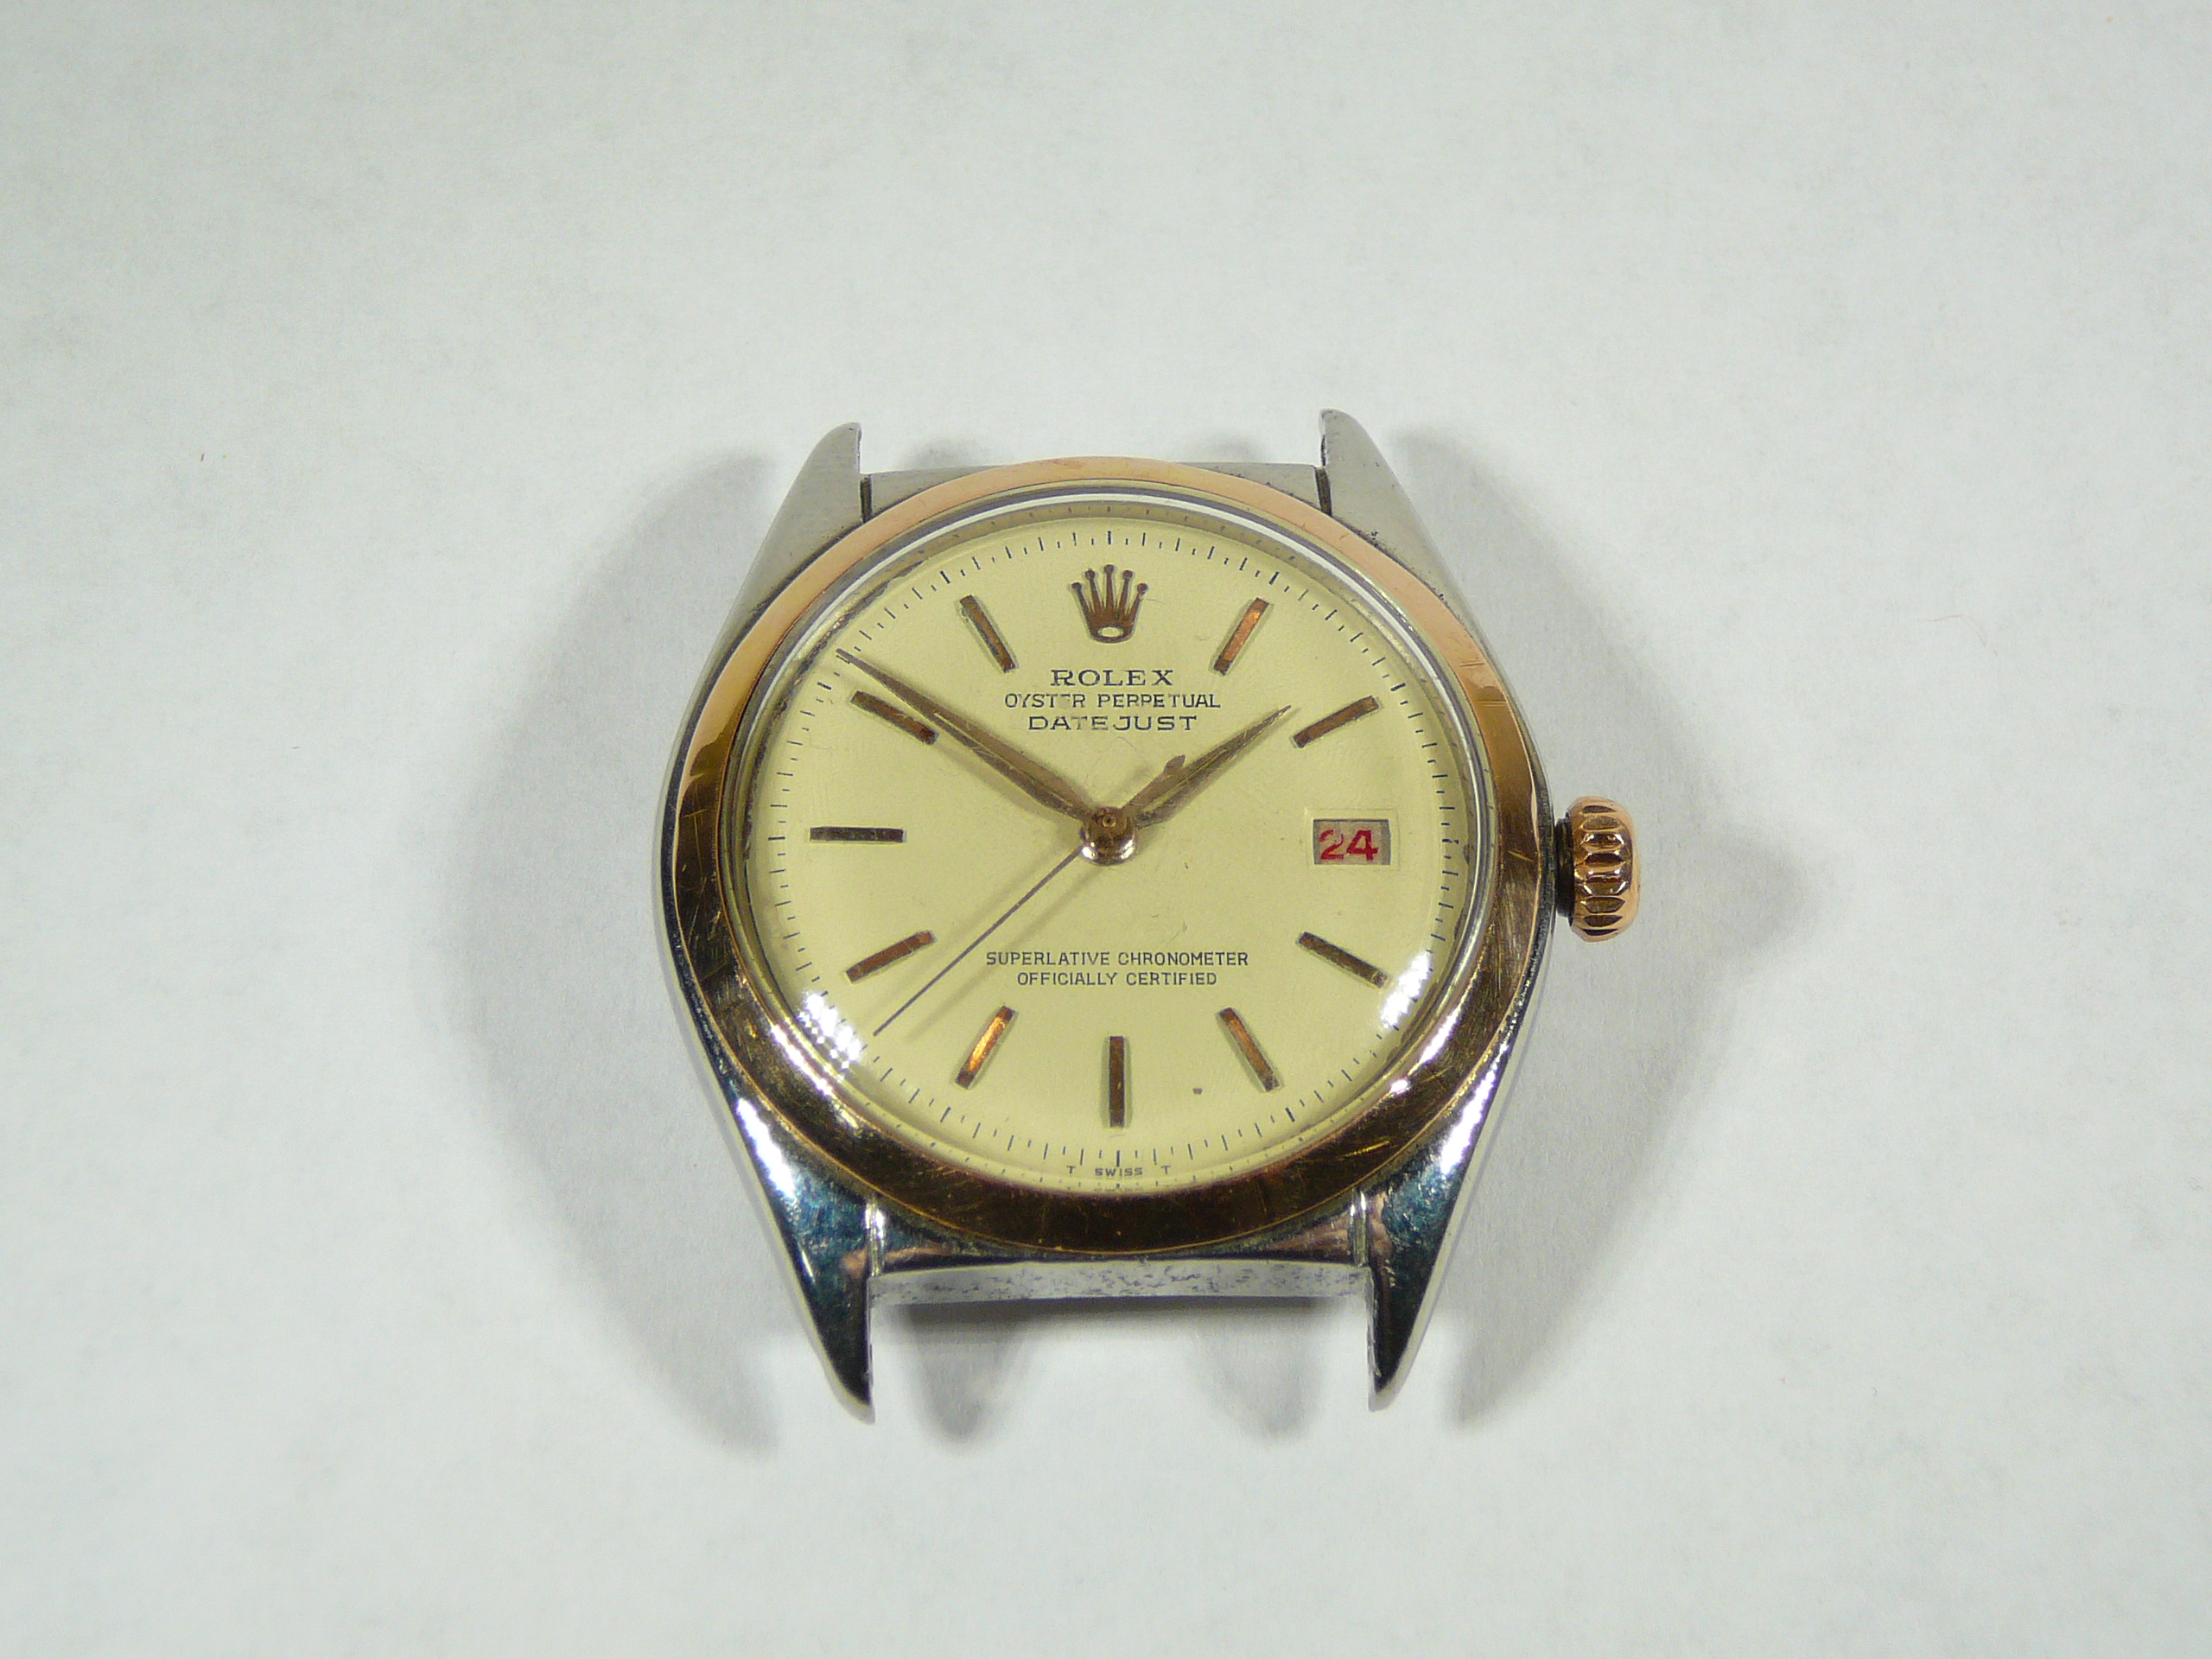 Gents Vintage Rolex Wrist Watch - Image 2 of 4